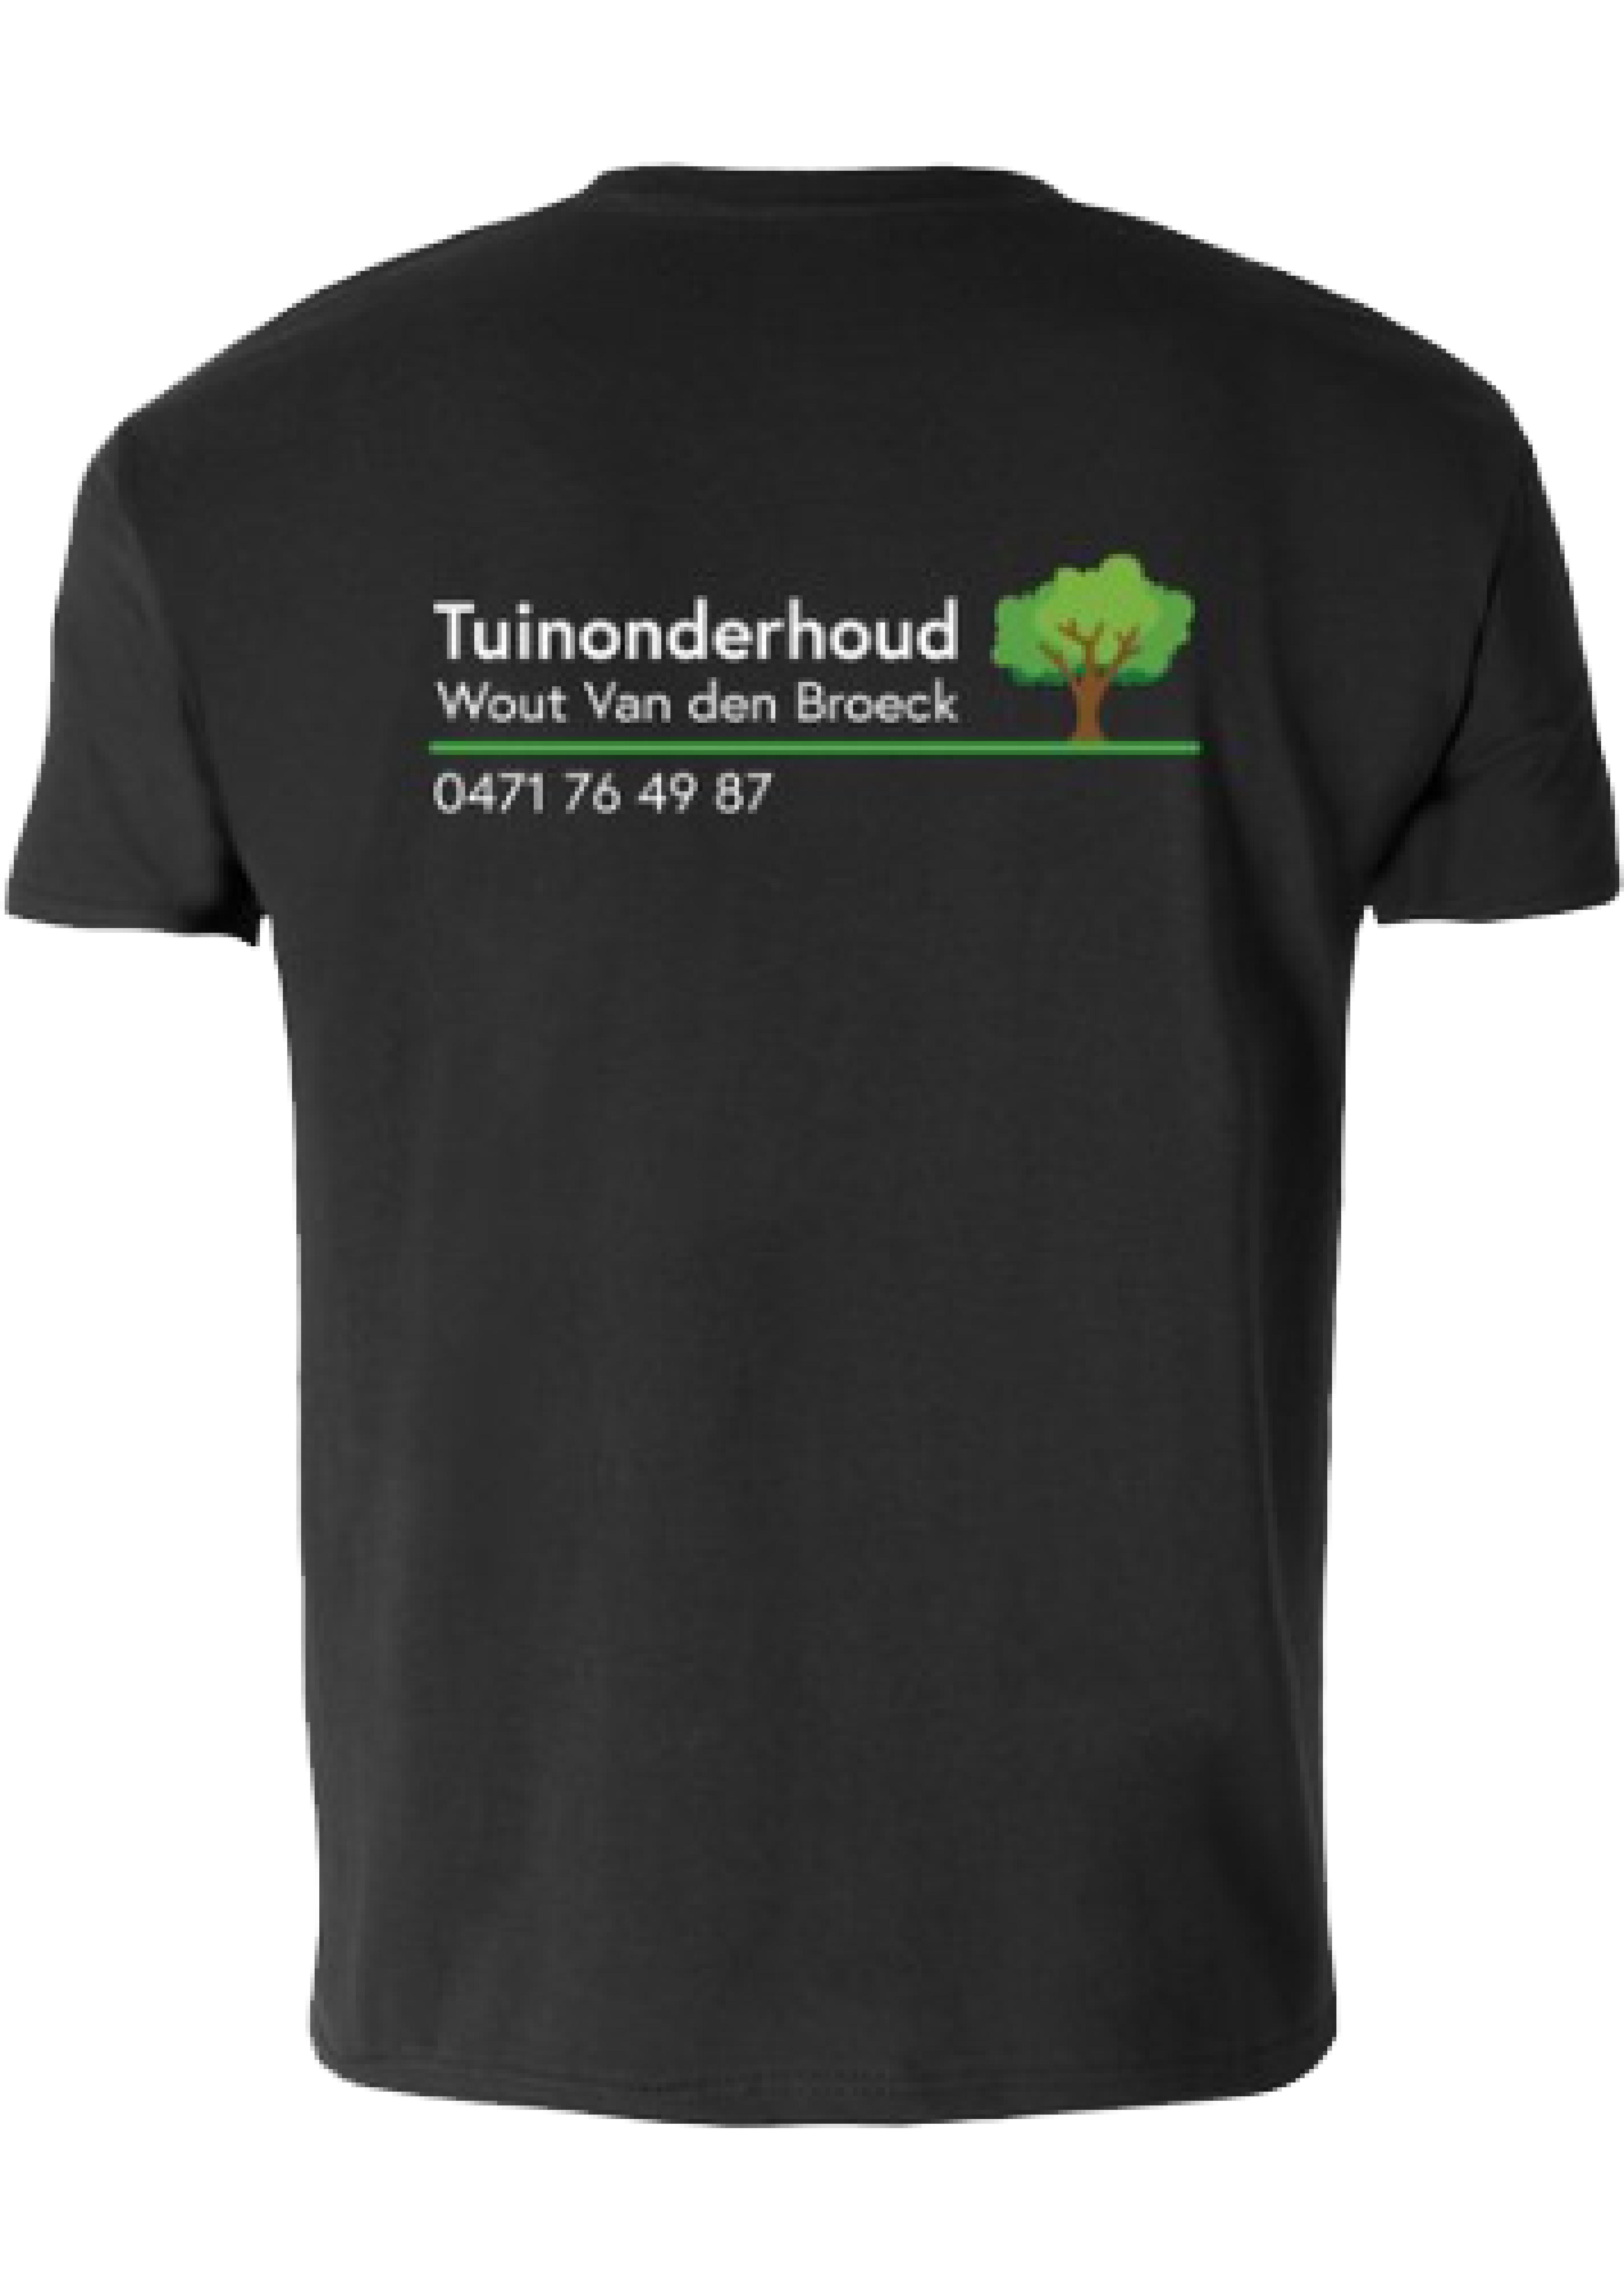 T-shirt Tuinonderhoud